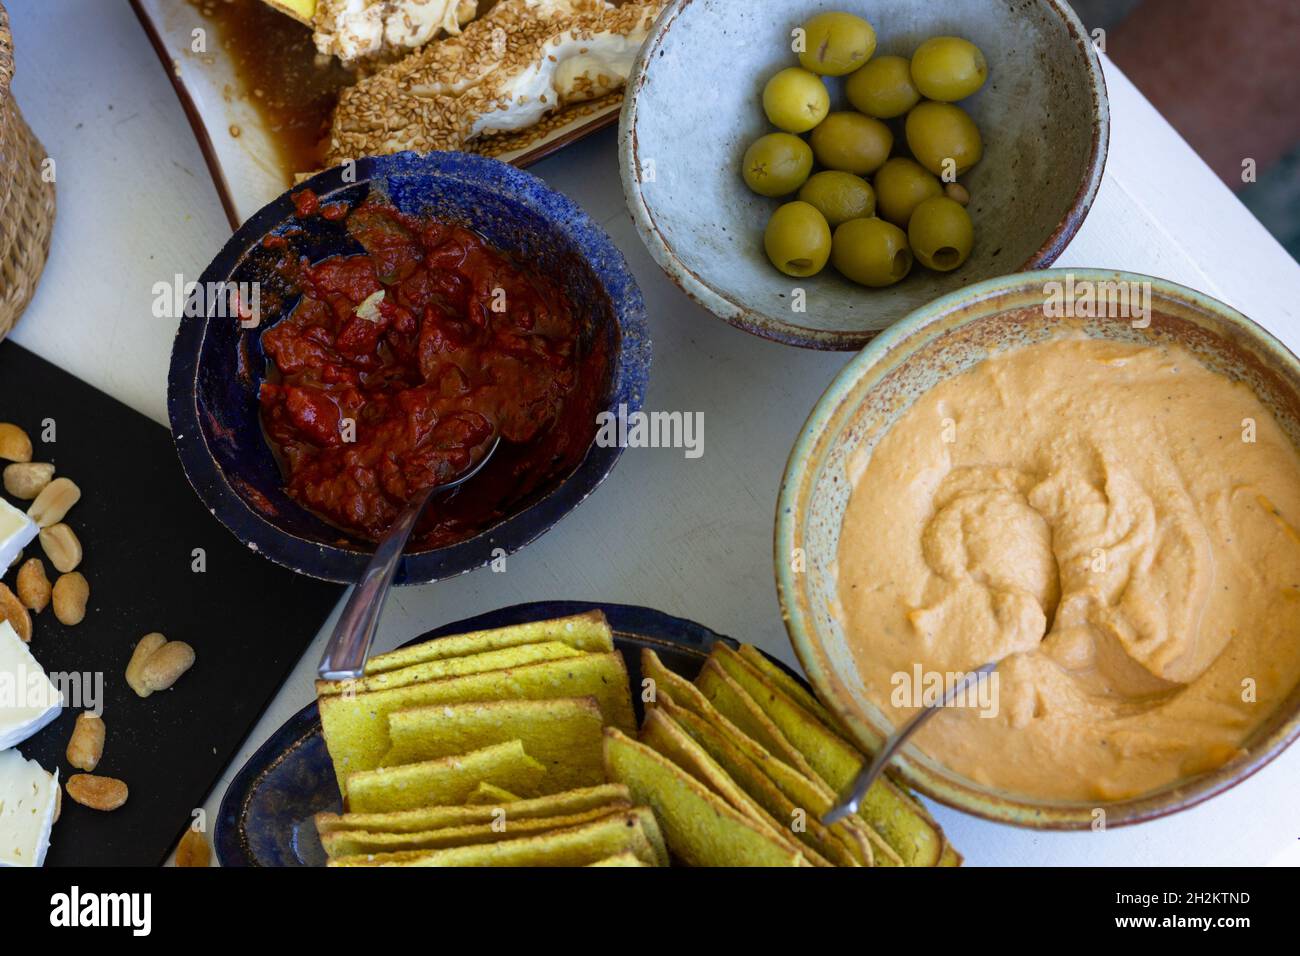 Assortiment de bols et d'assiettes à collation avec houmous, olives, craquelins, sauce tomate, fromage et arachides Banque D'Images